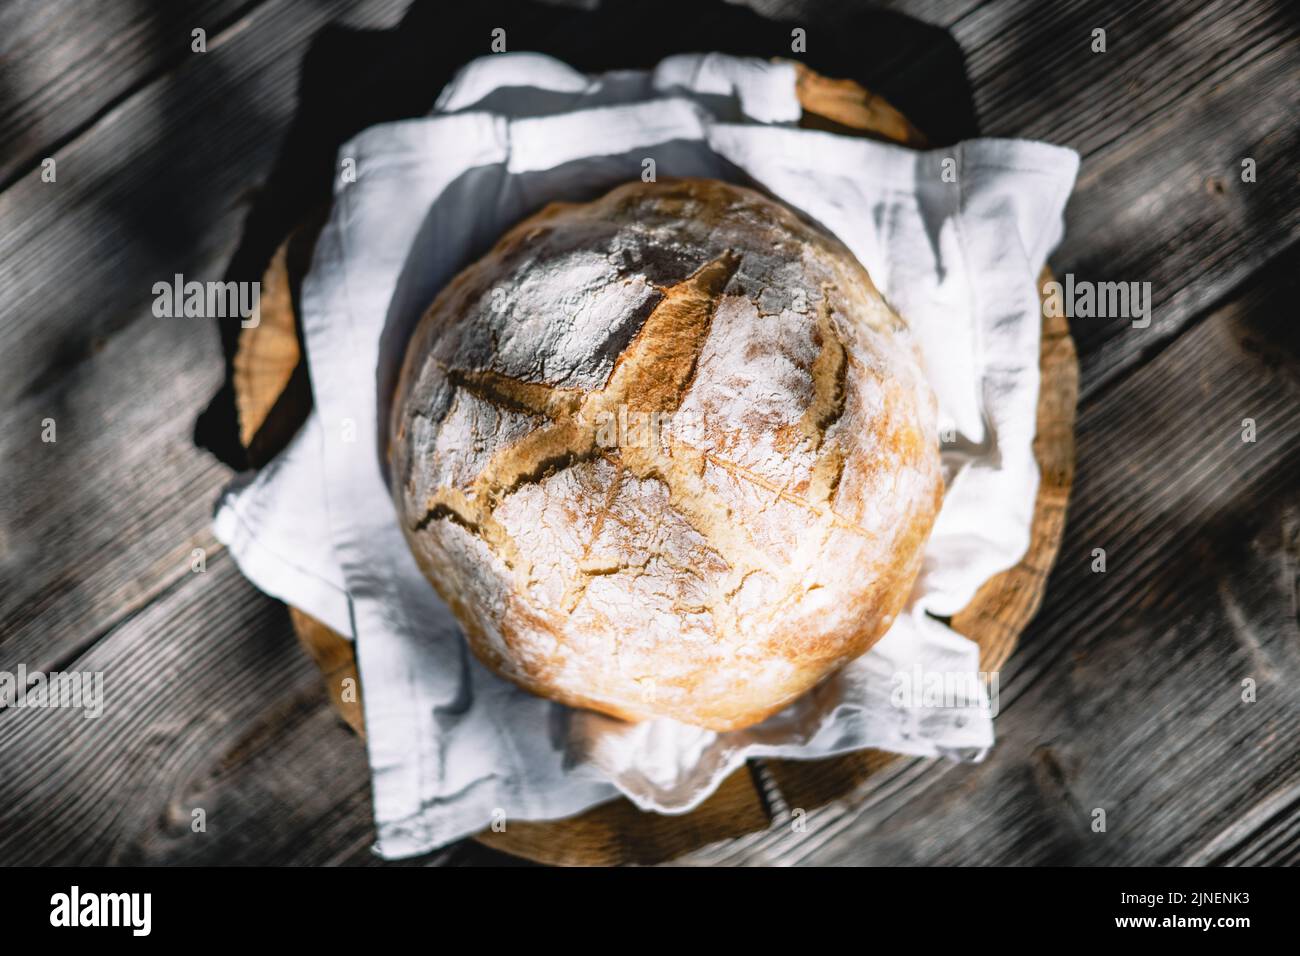 Pan de masa fermentada tradicional con piel de regadura en una mesa rústica de madera. Fotografía de alimentos saludables Foto de stock